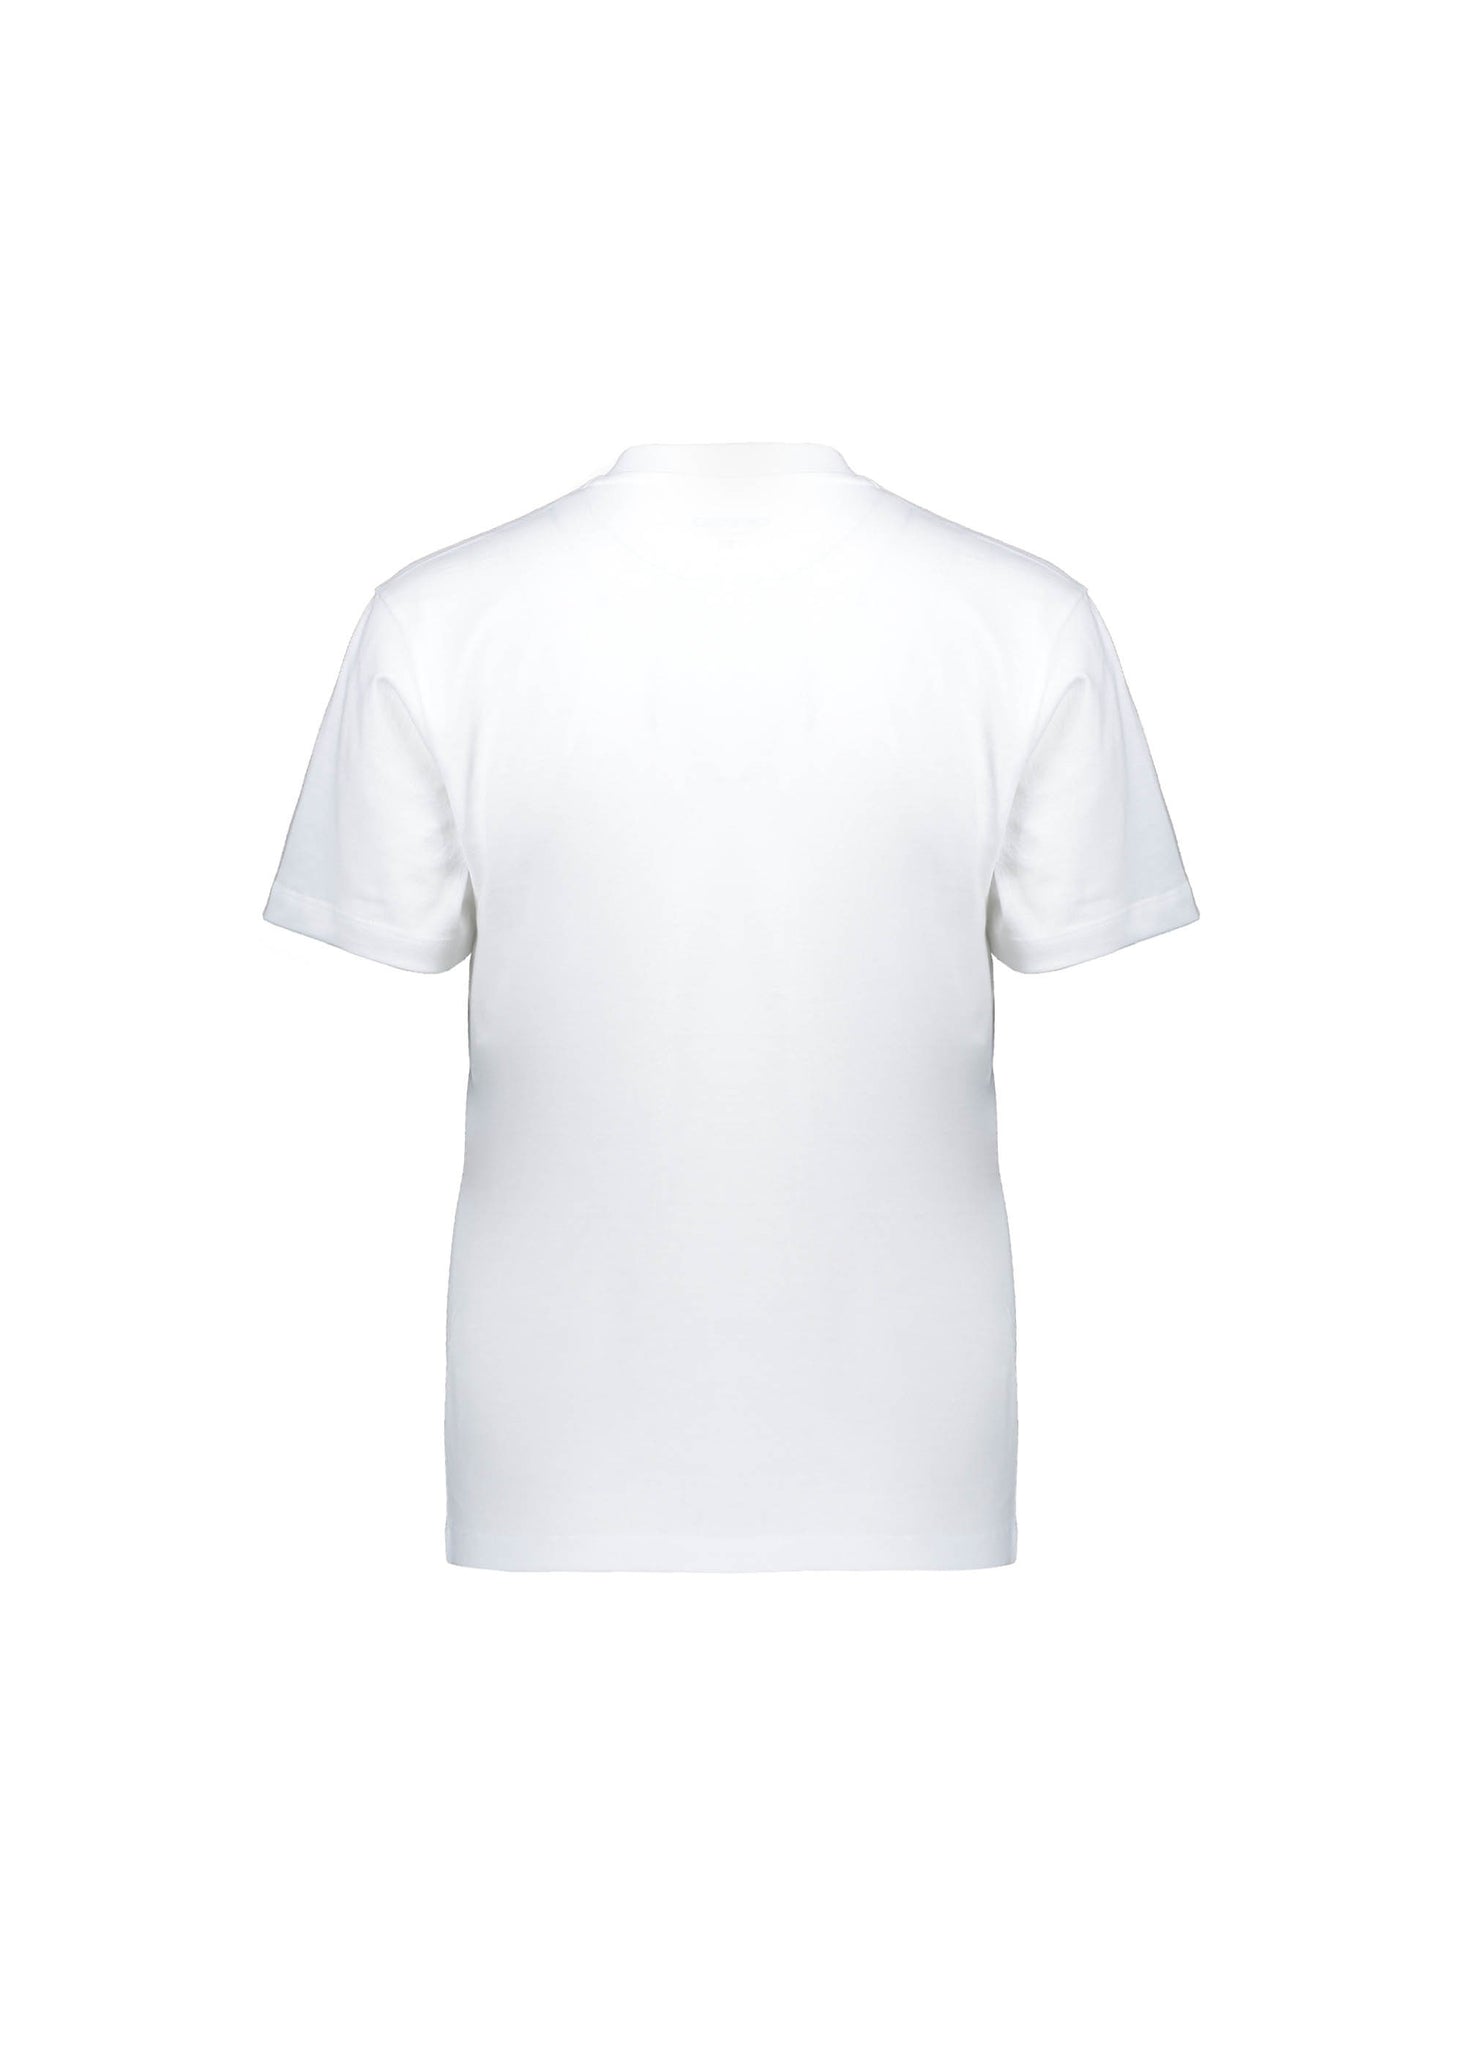 Carhartt WIP S/S Love T-shirt - White